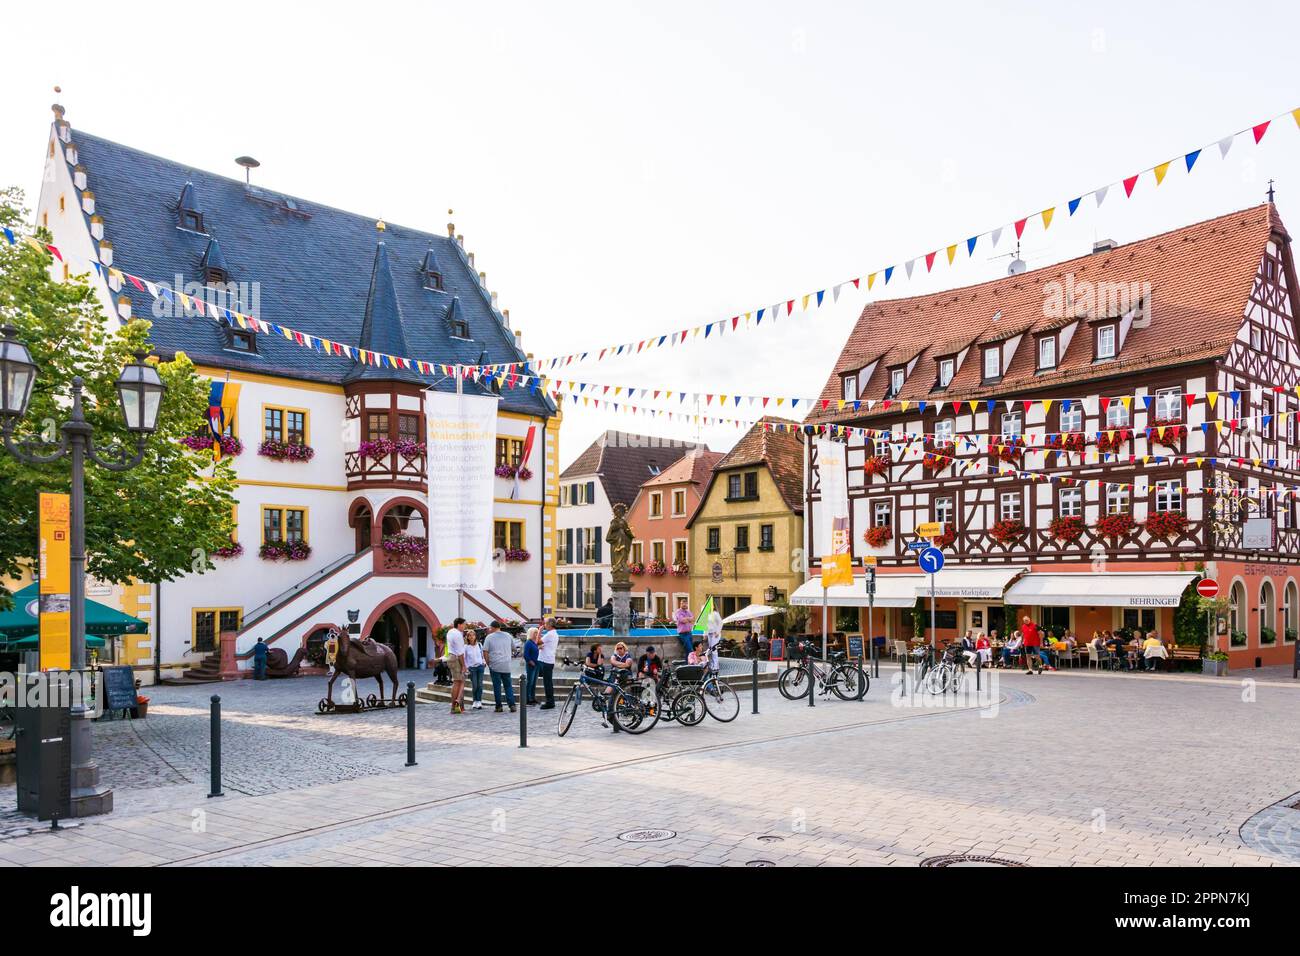 VOLKACH, ALLEMAGNE - le 20 août : les touristes à la vieille ville historique de Volkach, Allemagne le 20 août 2017. Volkach est célèbre pour son festival du vin annuel Banque D'Images